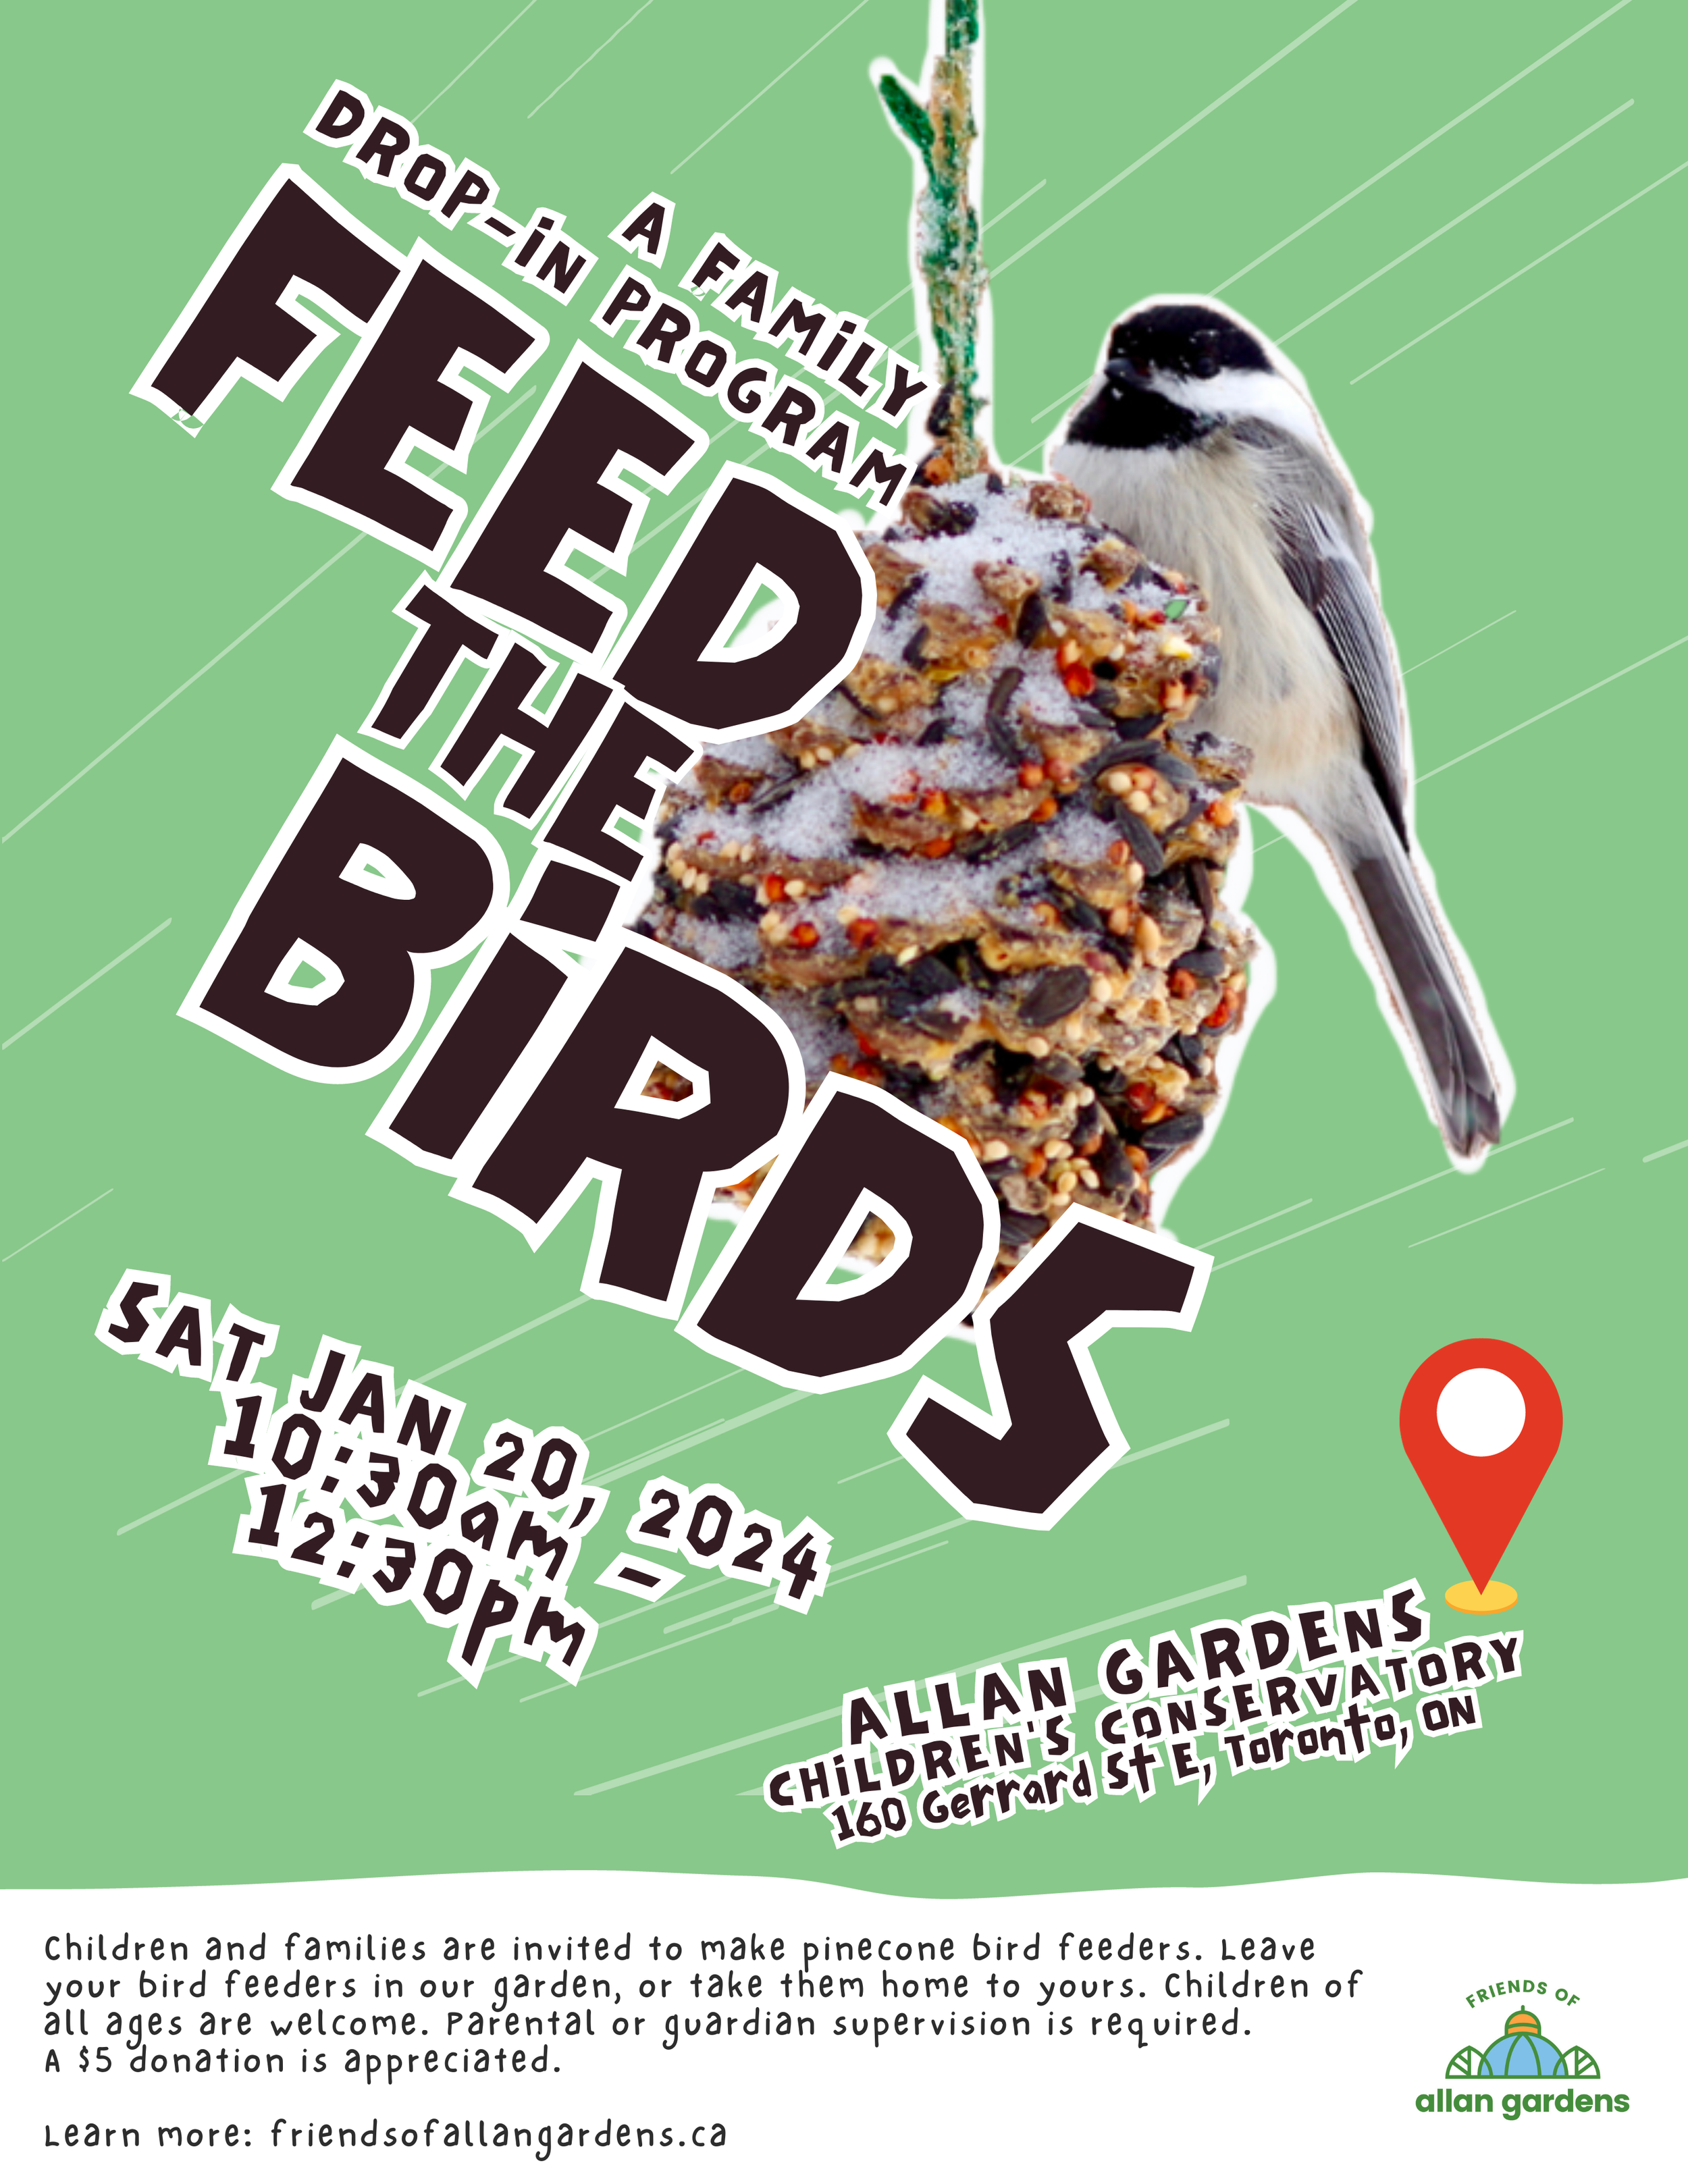 Feed The Birds